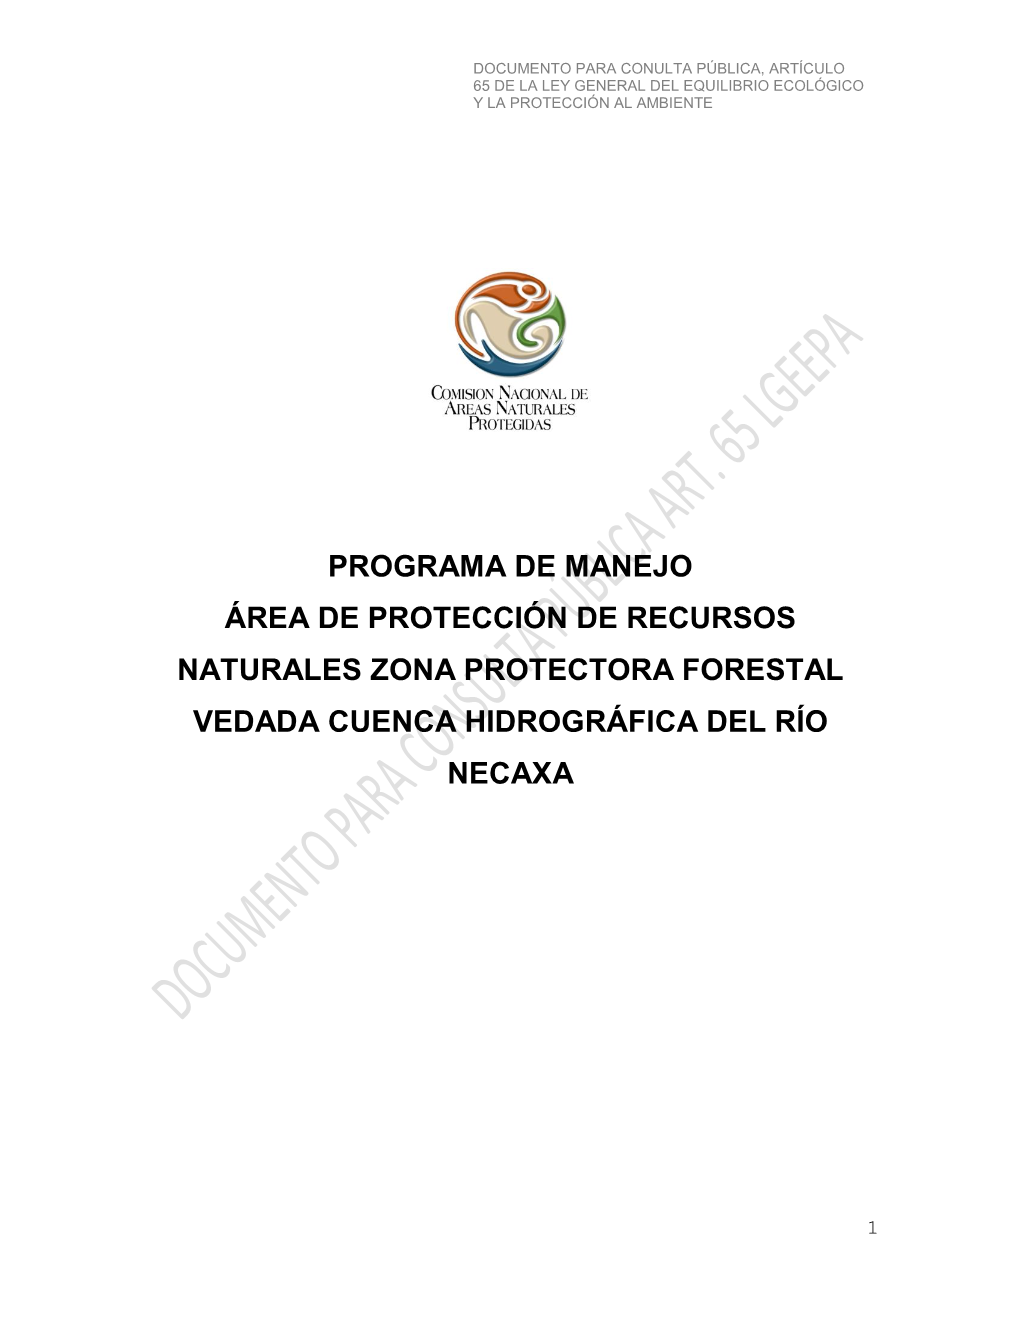 Programa De Manejo Área De Protección De Recursos Naturales Zona Protectora Forestal Vedada Cuenca Hidrográfica Del Río Necaxa